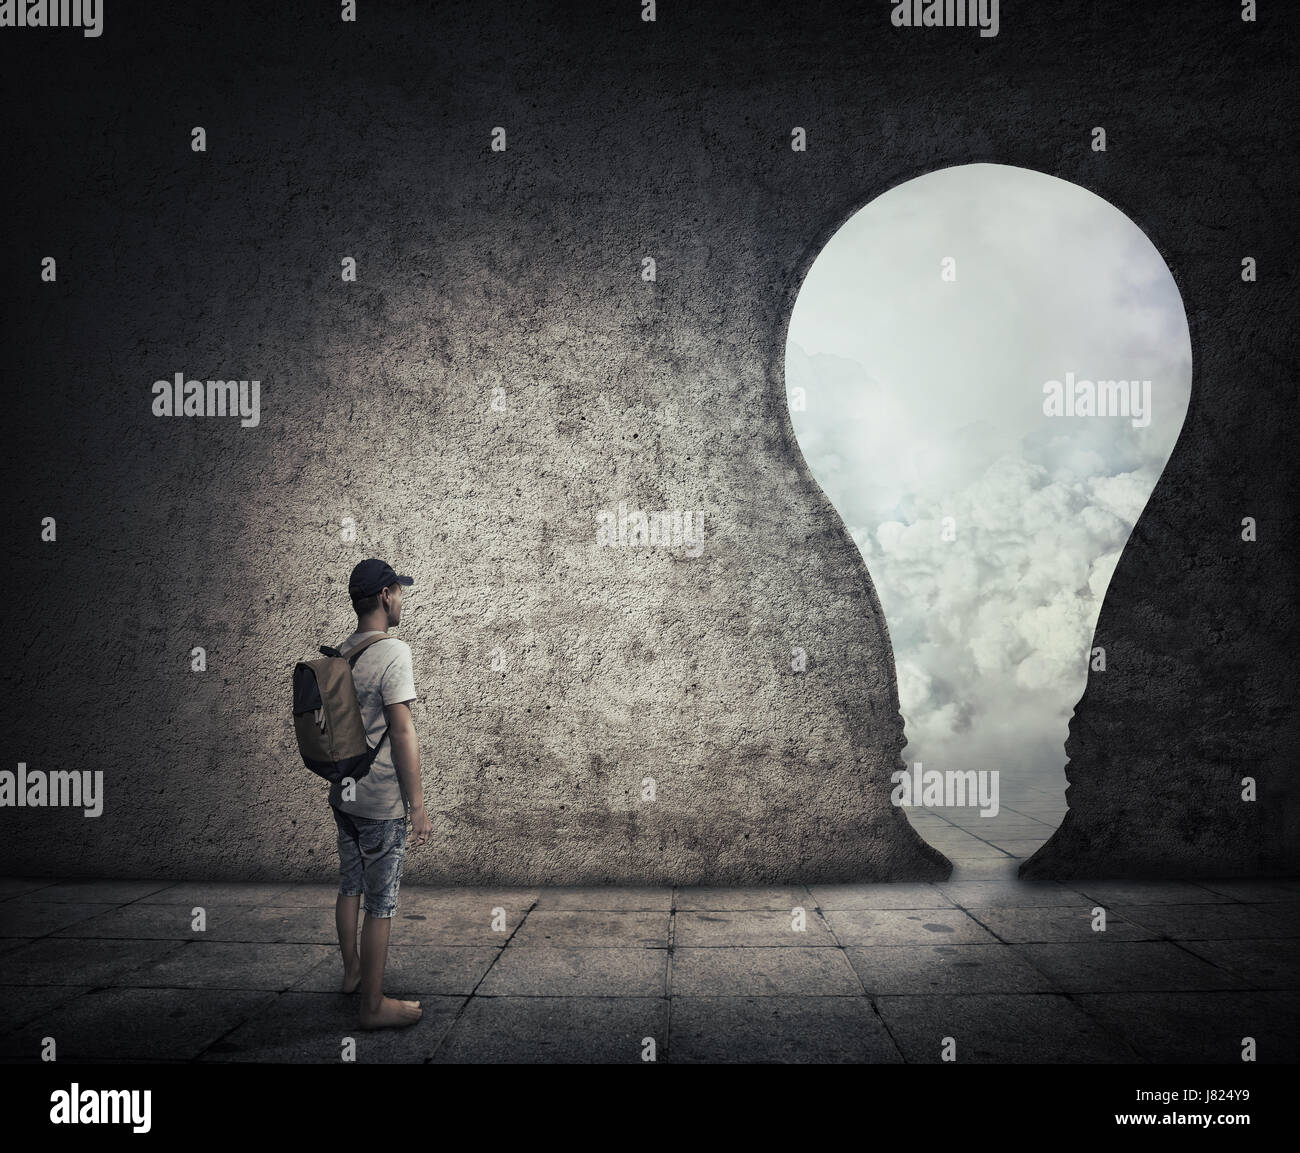 Konzeptbild mit einer Person in einem dunklen Raum vor einer Birne geformt Tür stehen. Möglichkeit, Eingang in eine andere Welt zu entkommen. Stockfoto